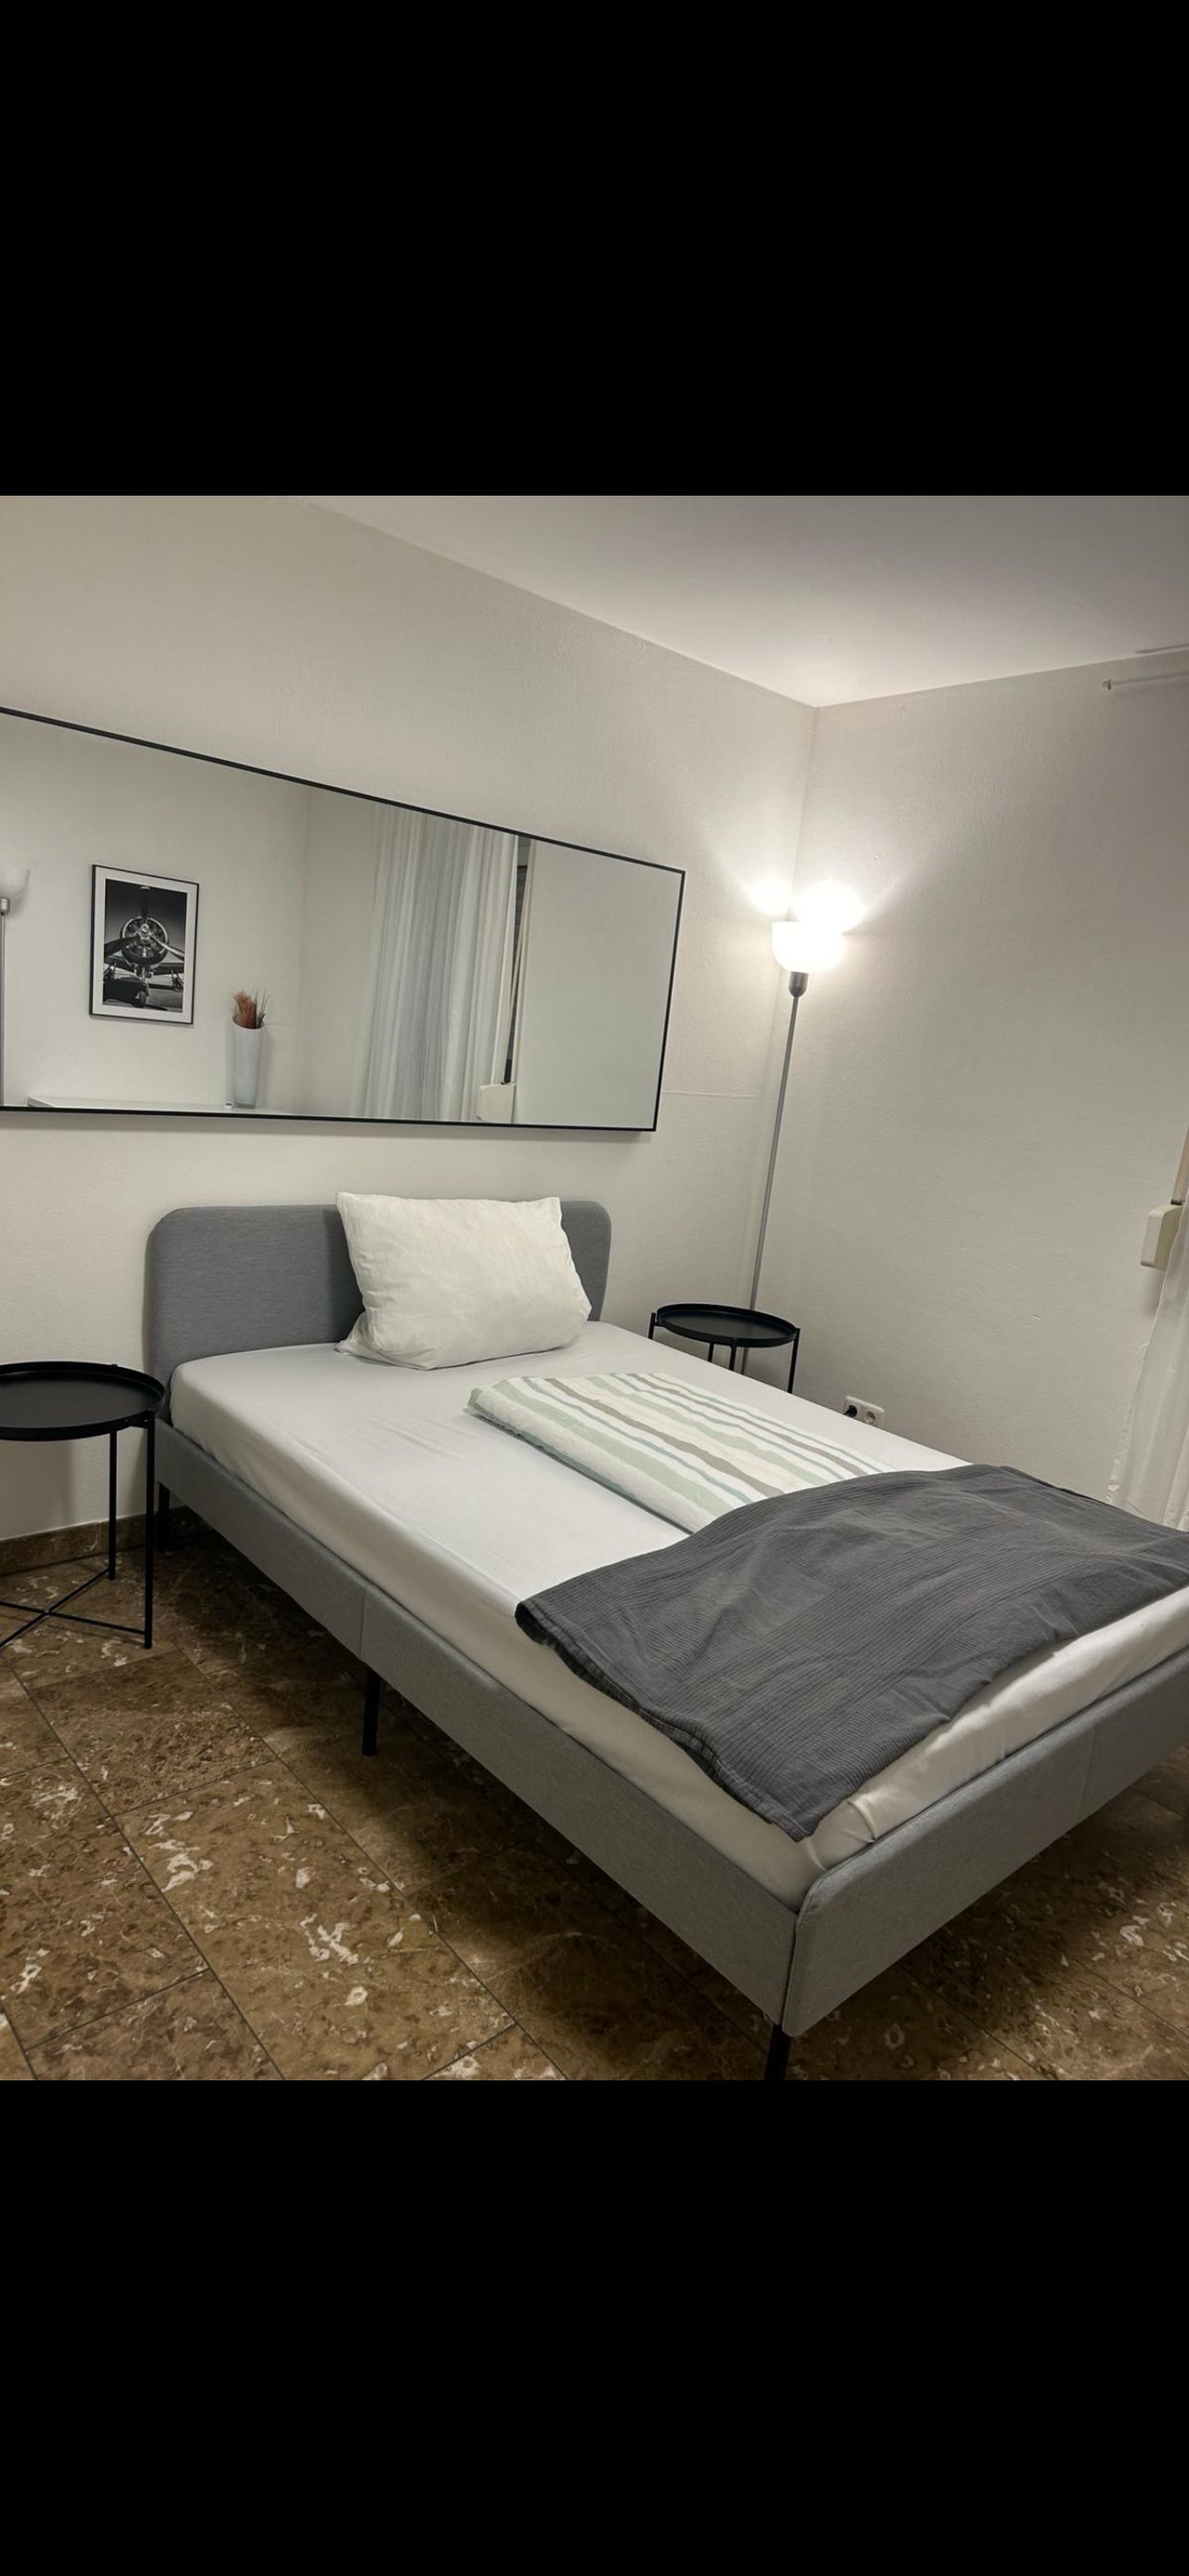 6 bedroom apartment in München